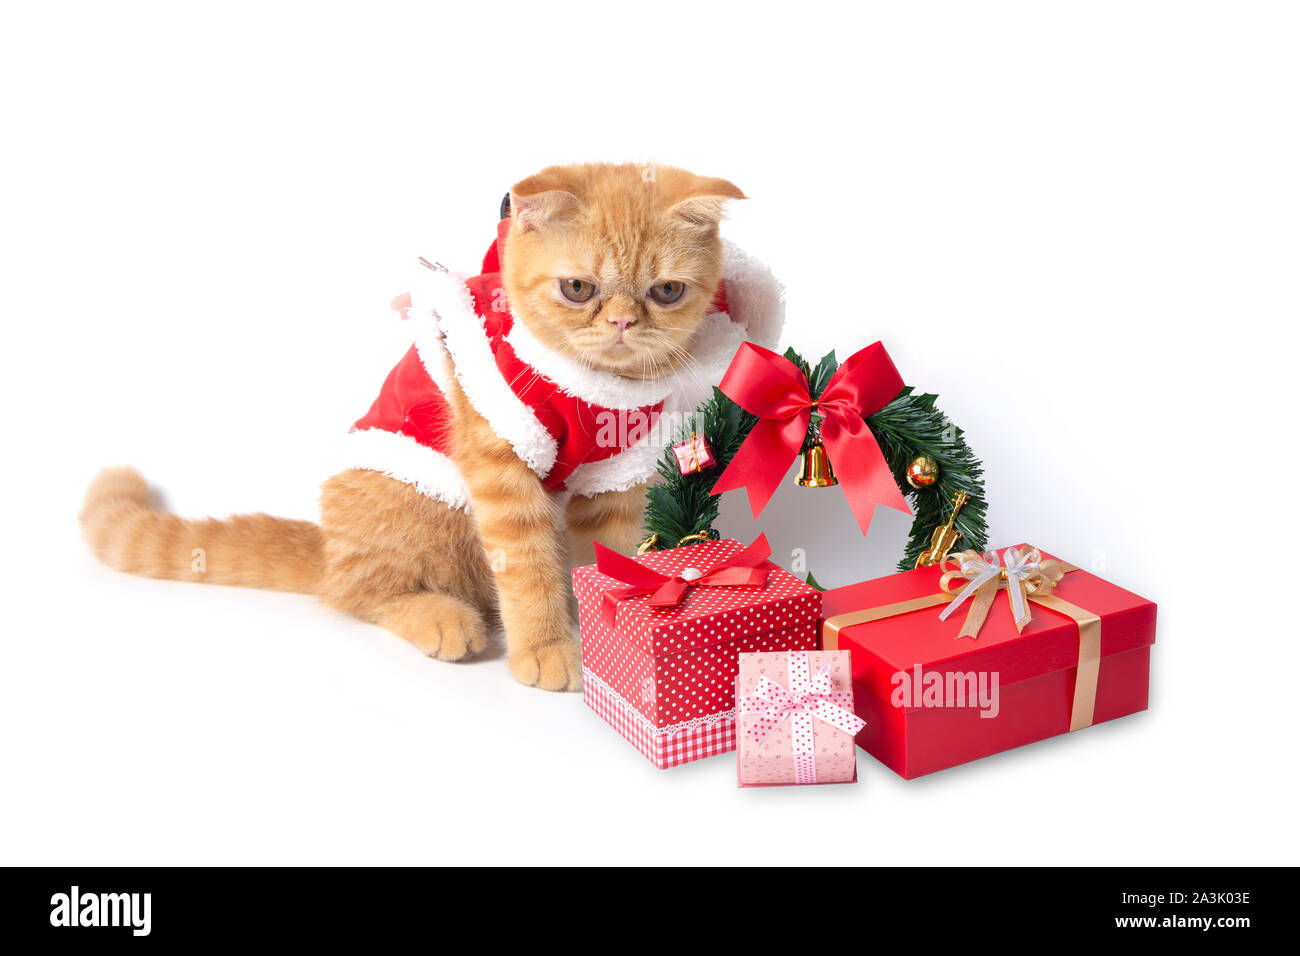 Piccolo gatto rosso da indossare santa claus suit con confezioni regalo su sfondo bianco. Foto Stock